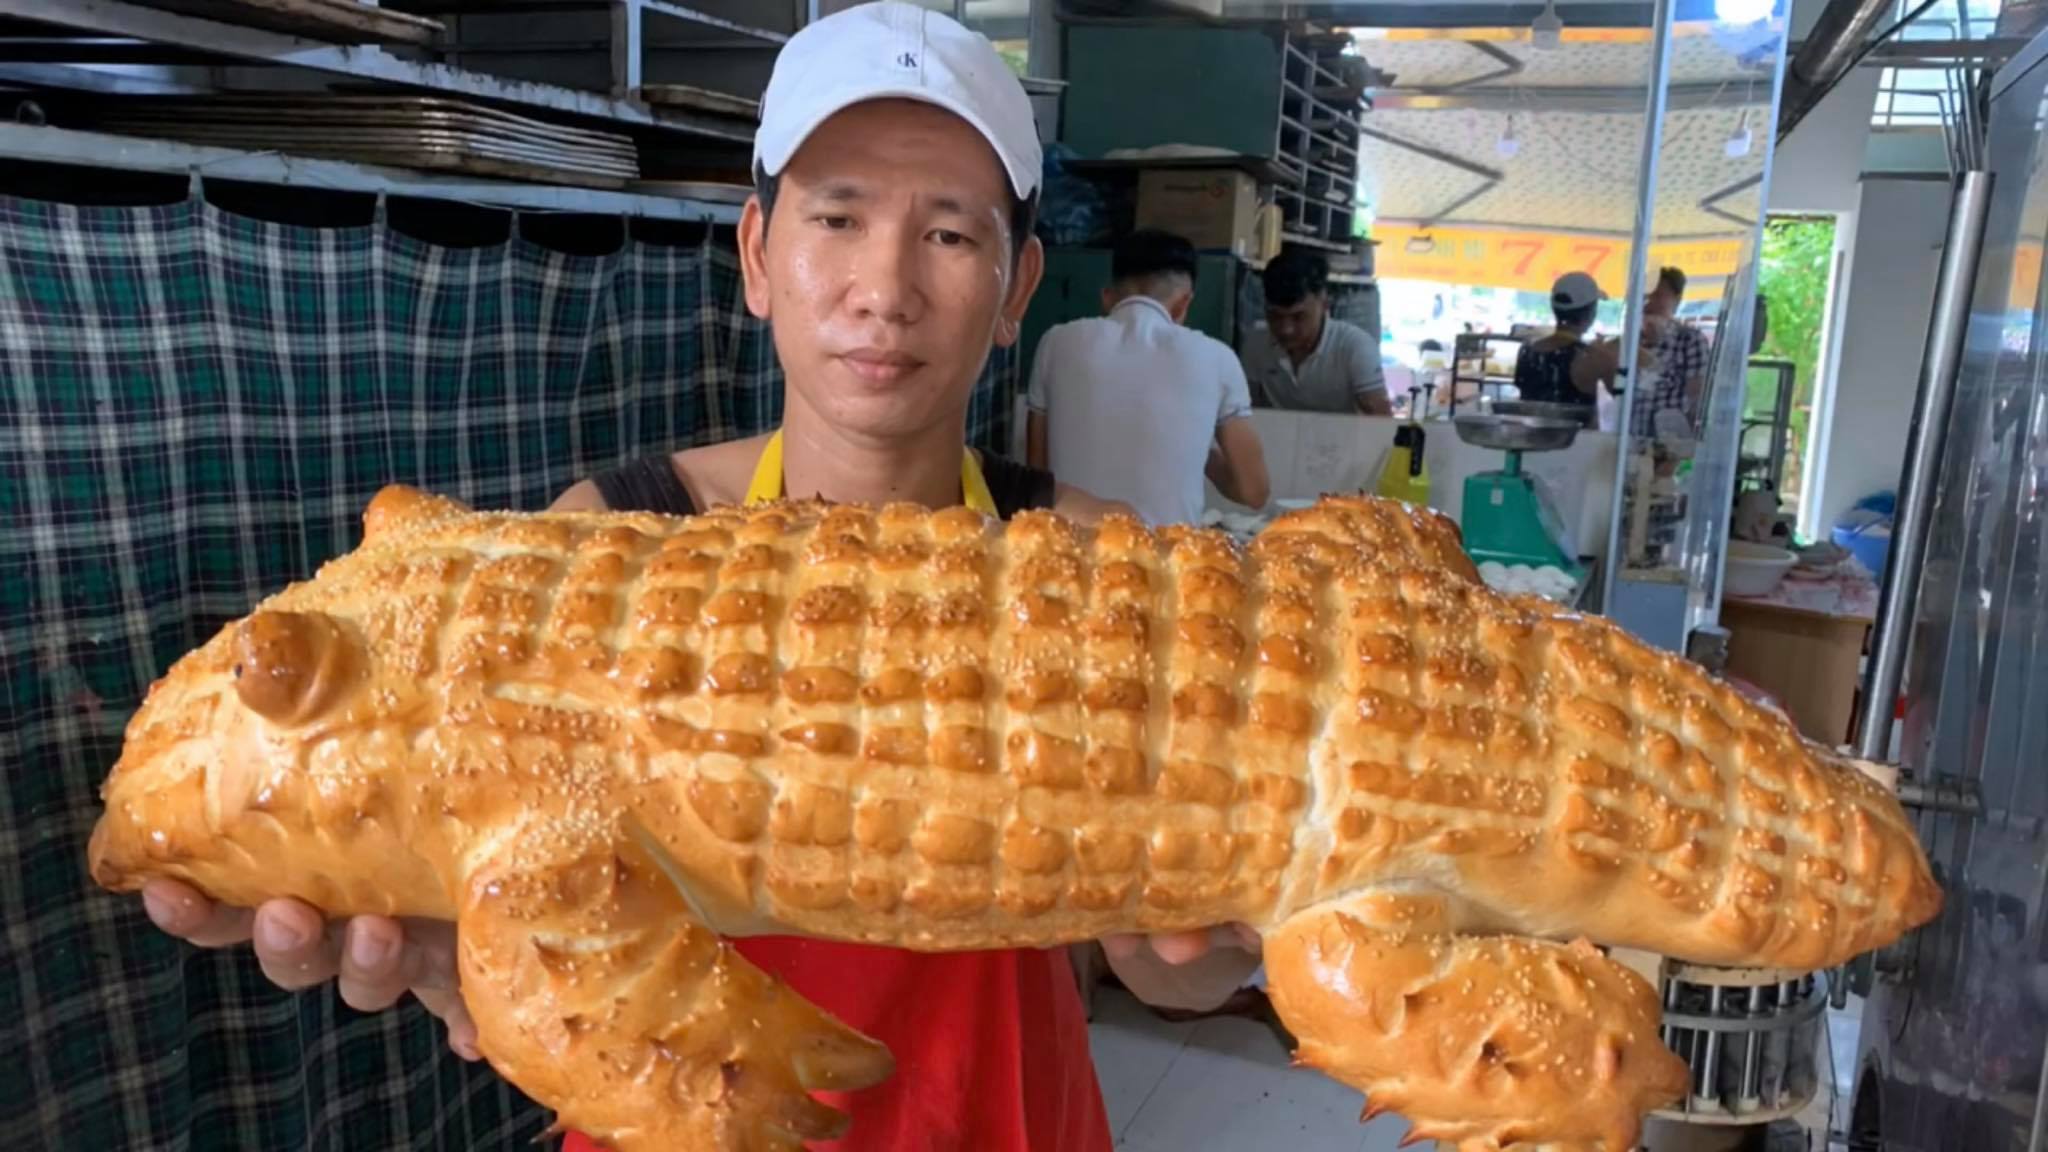 Bánh mì&nbsp;cá sấu có trọng lượng 1,5 kg, dài 60 cm. Gây ấn tượng bởi ngoại hình khác biệt, đây đang là chiếc bánh mì "hot" nhất mạng xã hội những ngày qua. (Ảnh: Lang Thang An Giang)